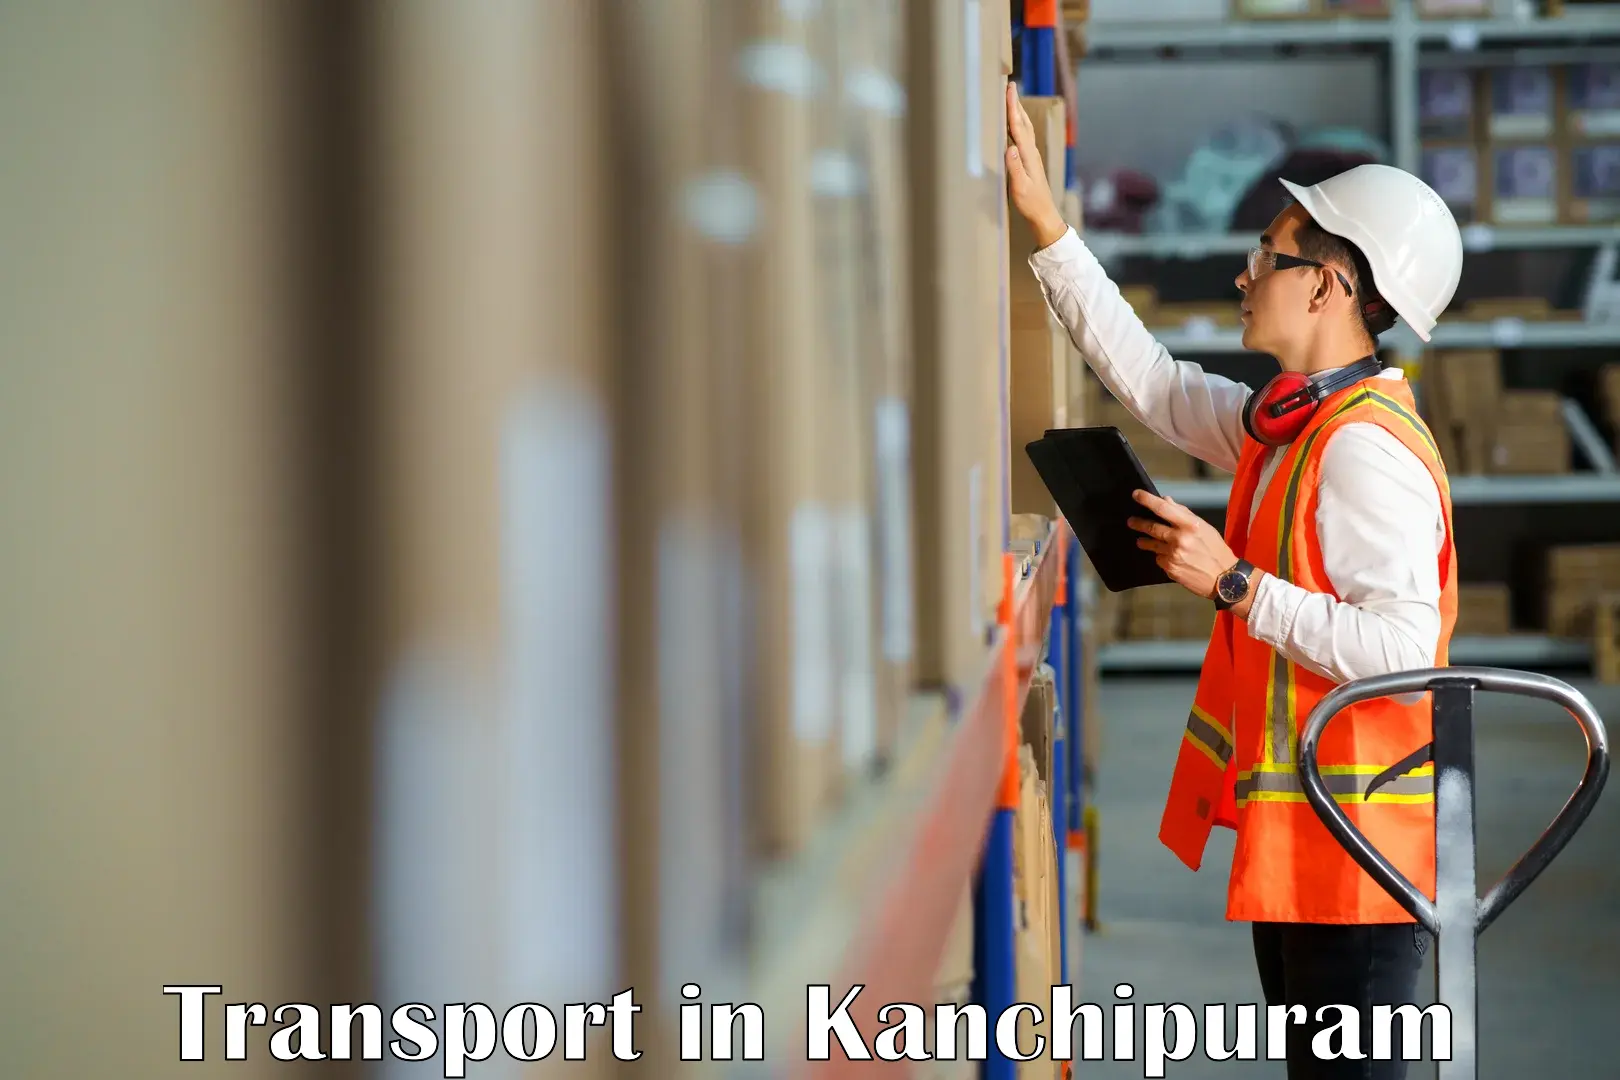 Intercity goods transport in Kanchipuram